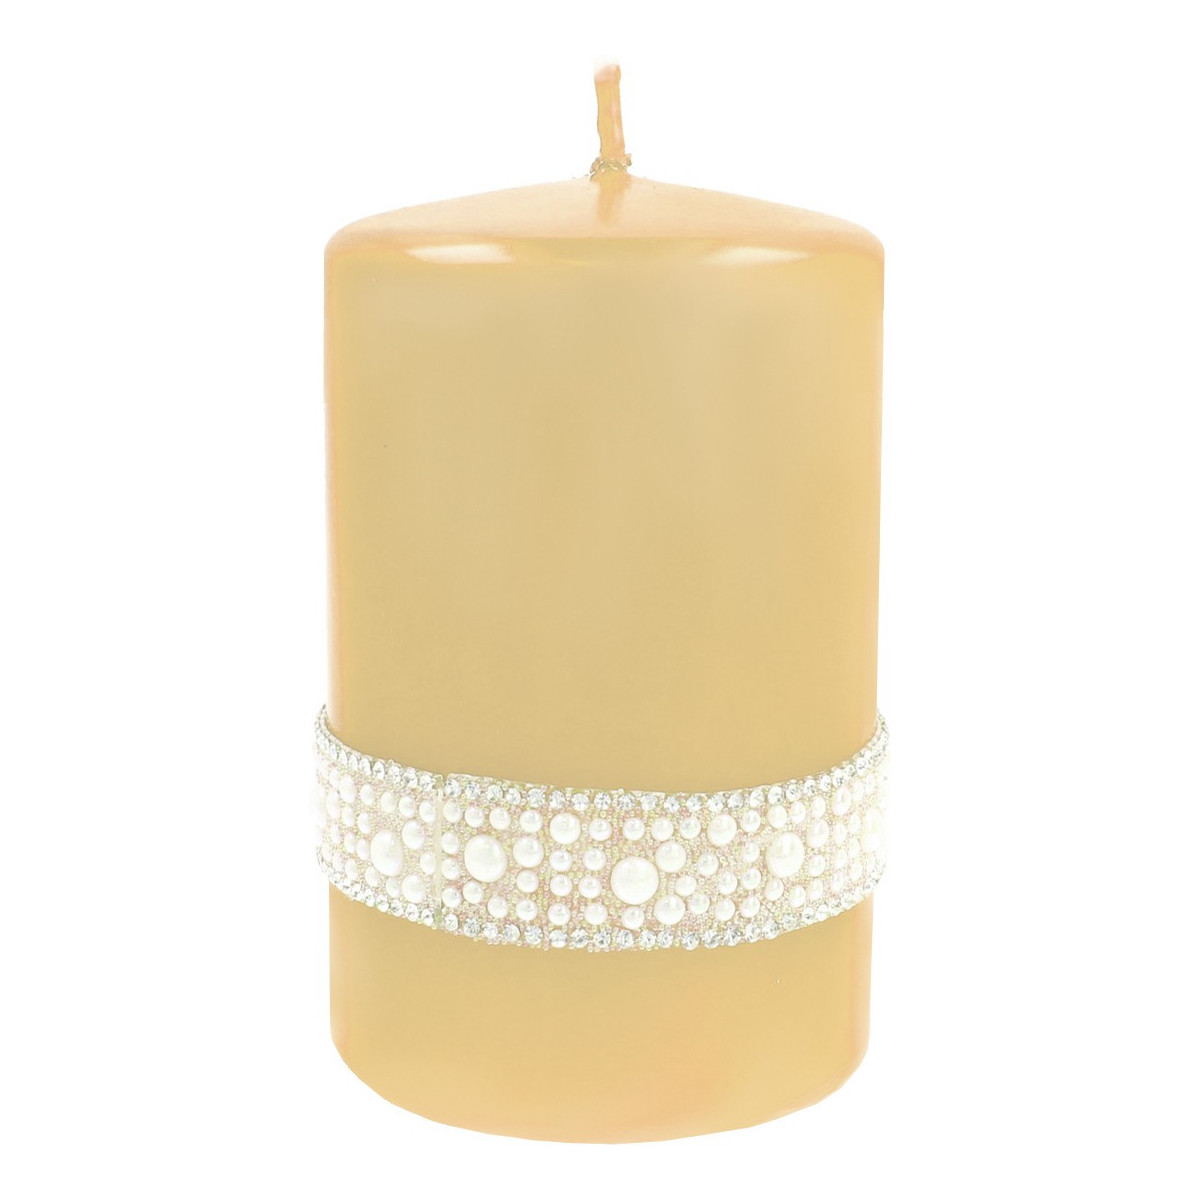 Artman Candles Świeca ozdobna Crystal Opal Pearl kremowa - walec mały